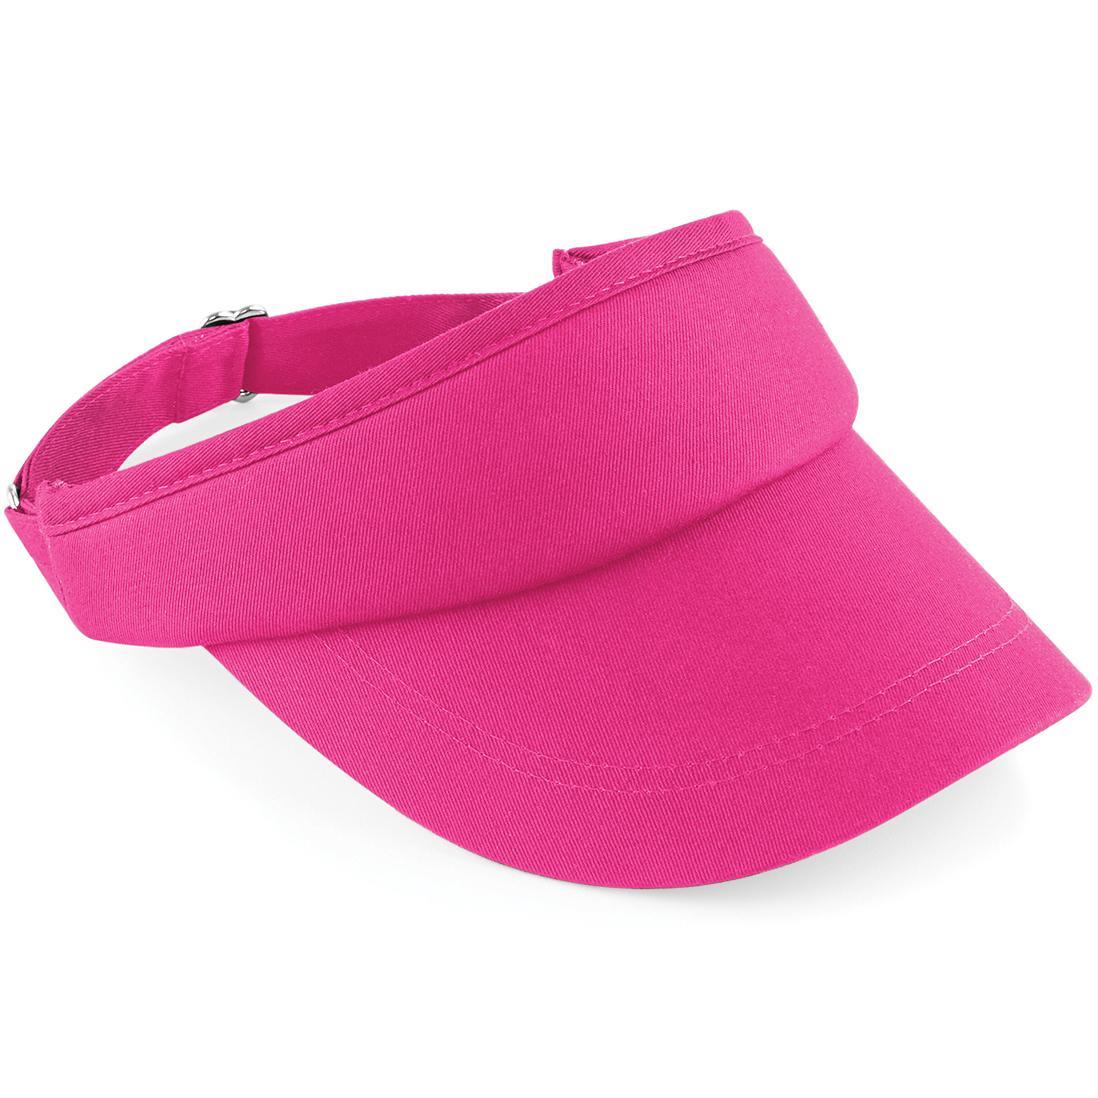 Beechfield Unisex Sports Visor / Headwear (Pack of 2) (Fuchsia) (One Size)